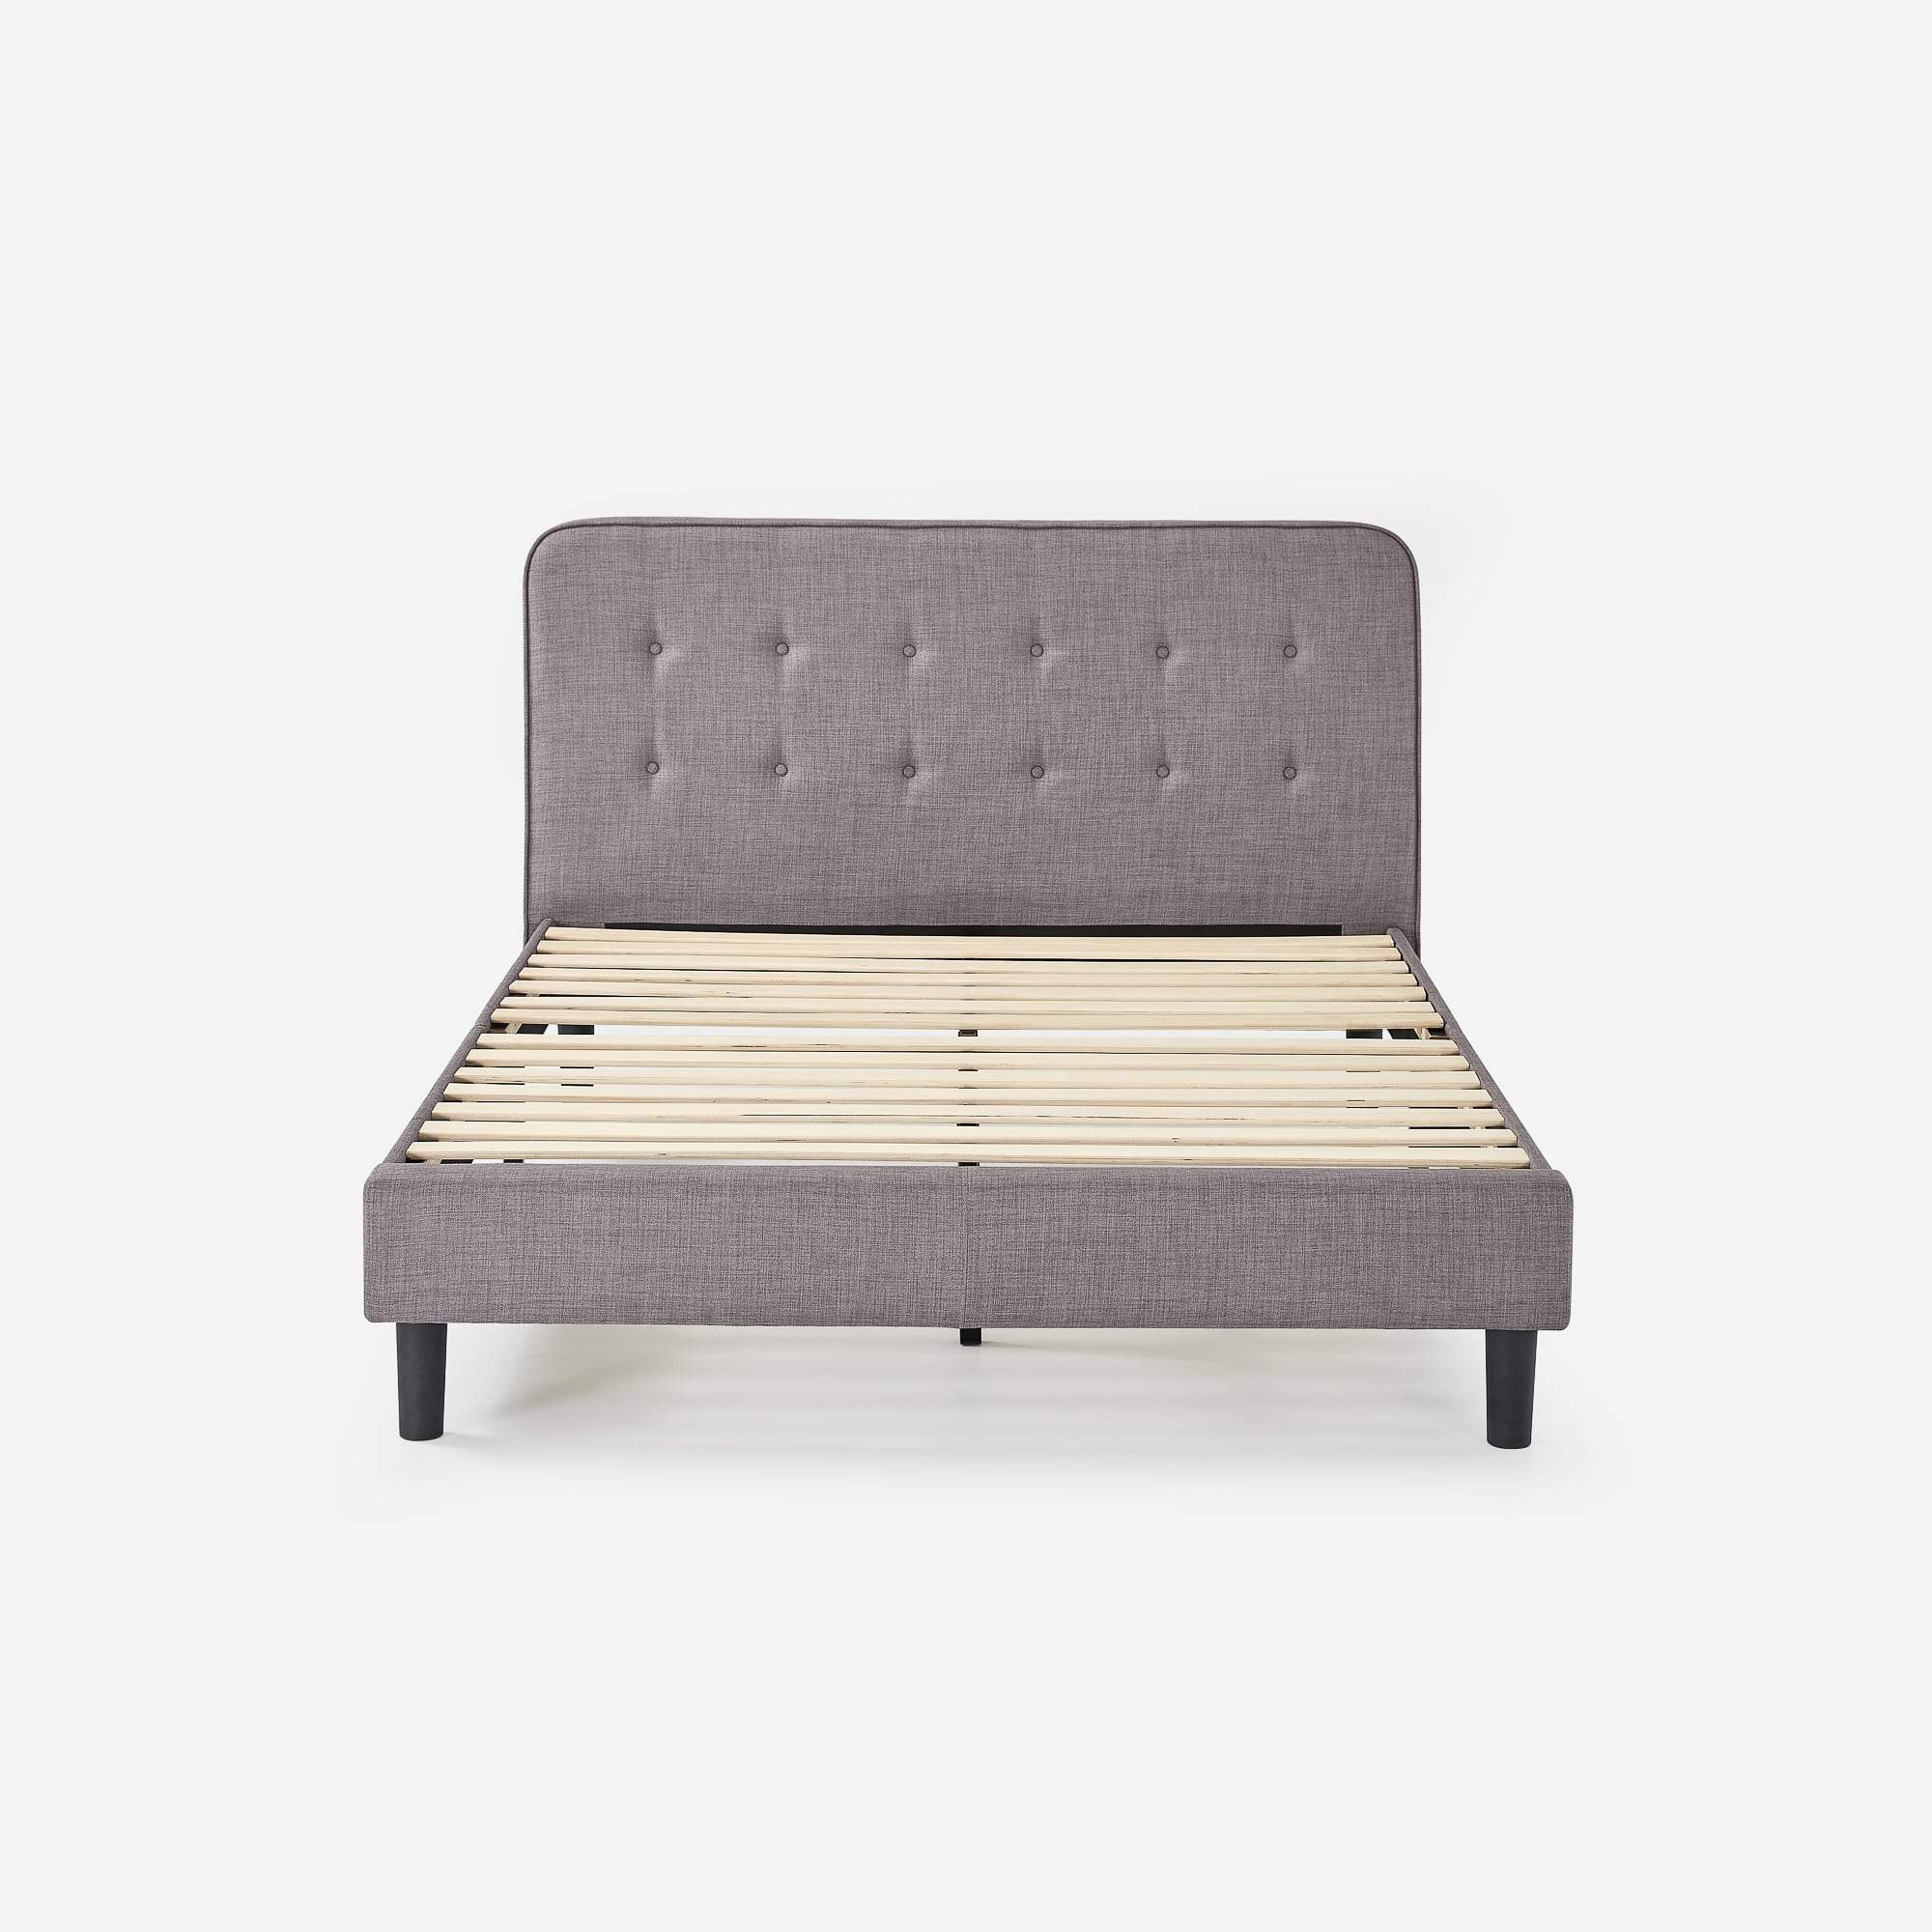 Melodey Upholstered Platform Bed Frame with USB Ports